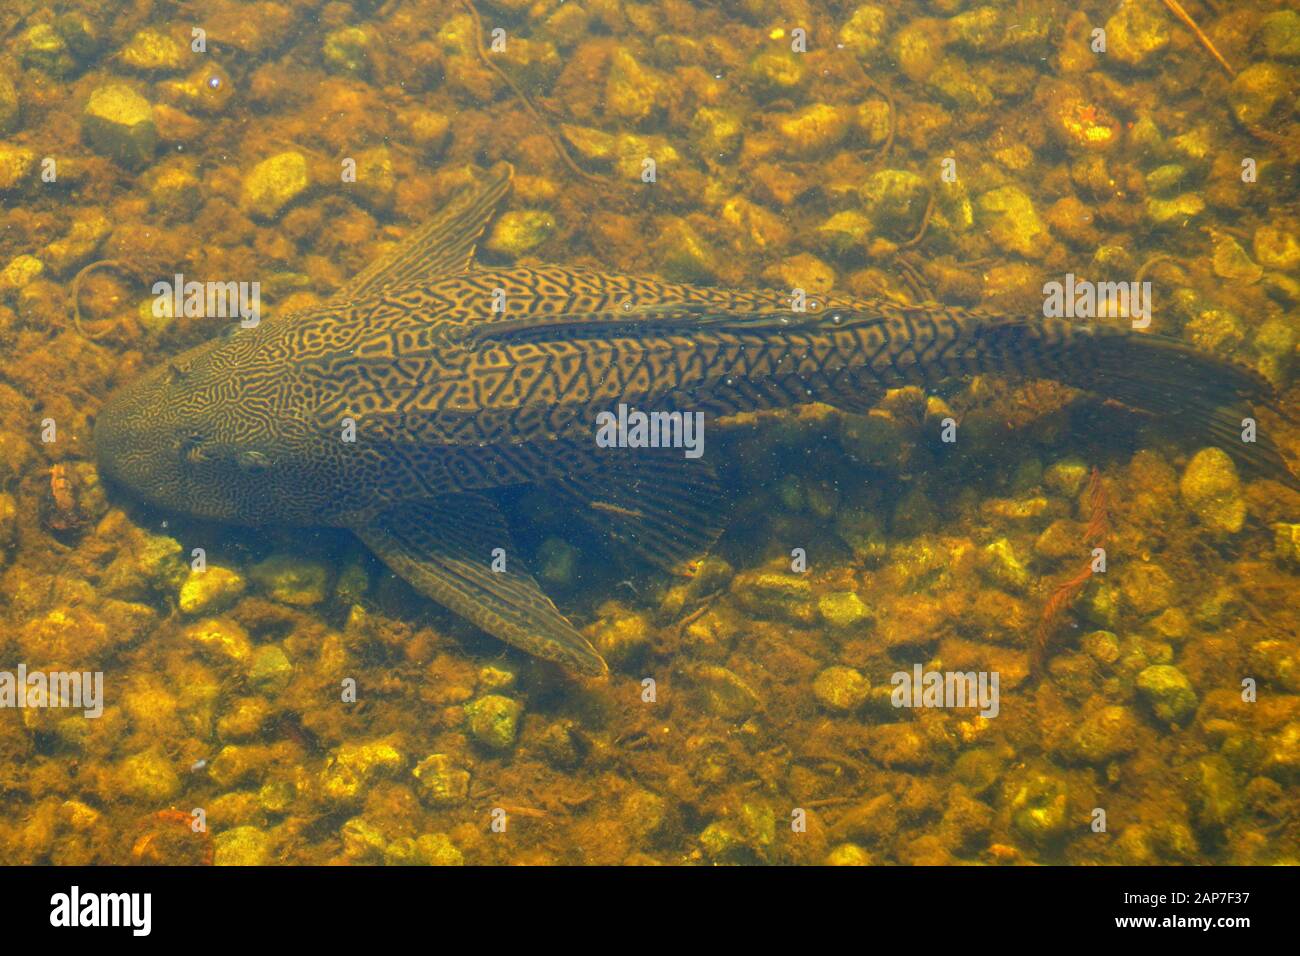 Un poisson pleco dans l'eau par Everglades, Floride, États-Unis Banque D'Images